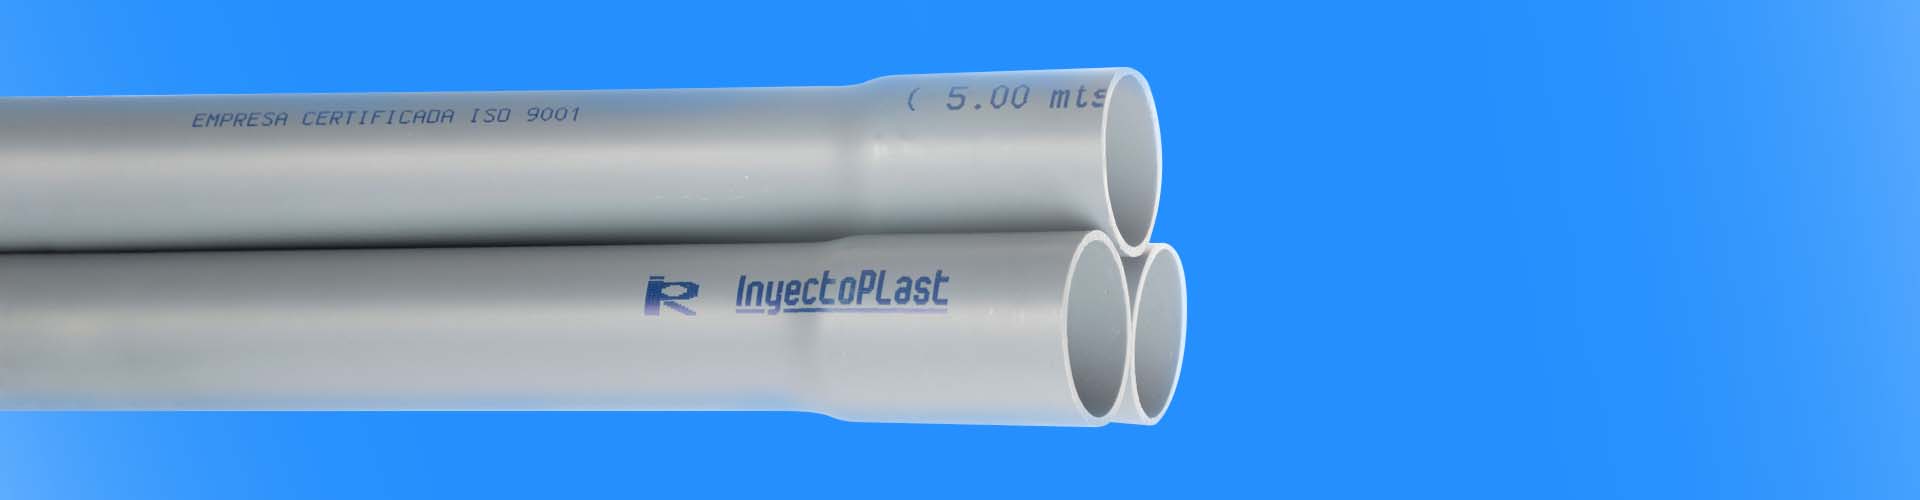 Flujo constante, calidad insuperable: Nuestros tubos de agua en PVC para sistemas confiables